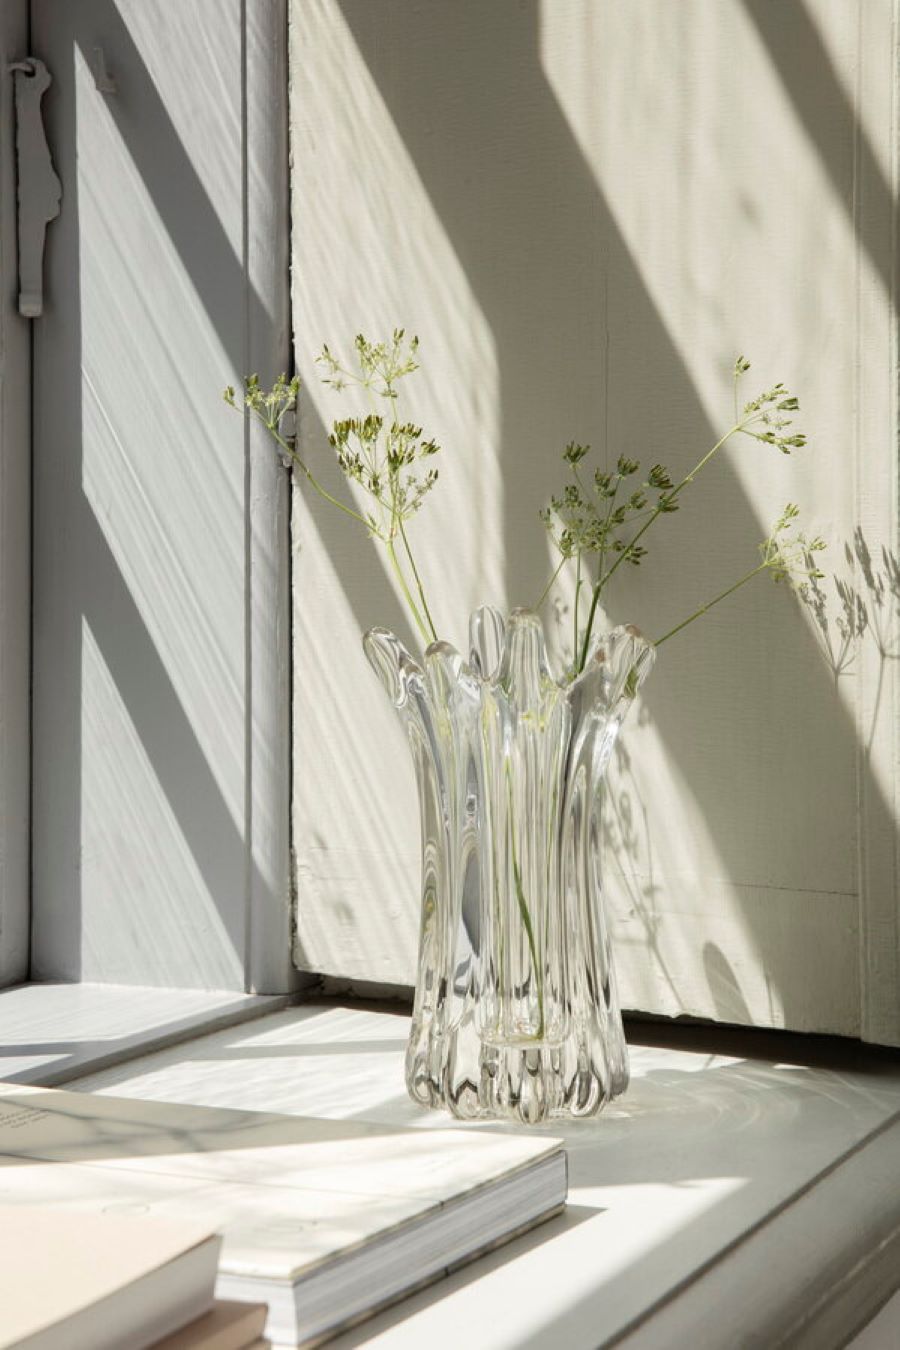 Masívna sklenená váza Holo s rastlinami pri okne.